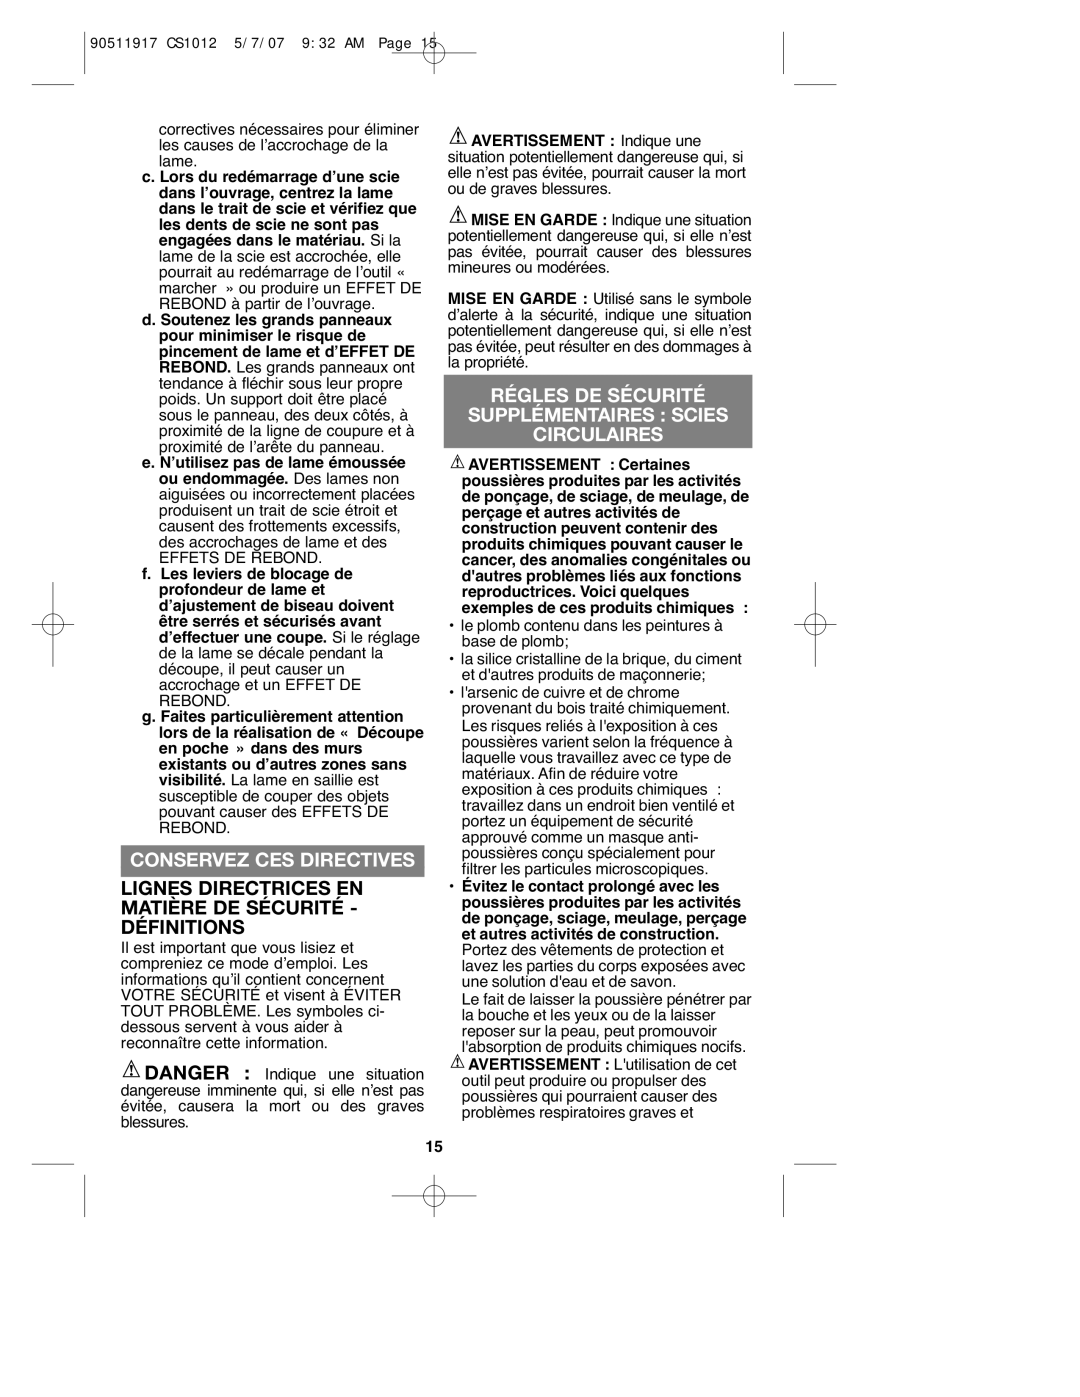 Black & Decker CS1012 instruction manual Conservez CES Directives, Régles DE Sécurité Supplémentaires Scies Circulaires 